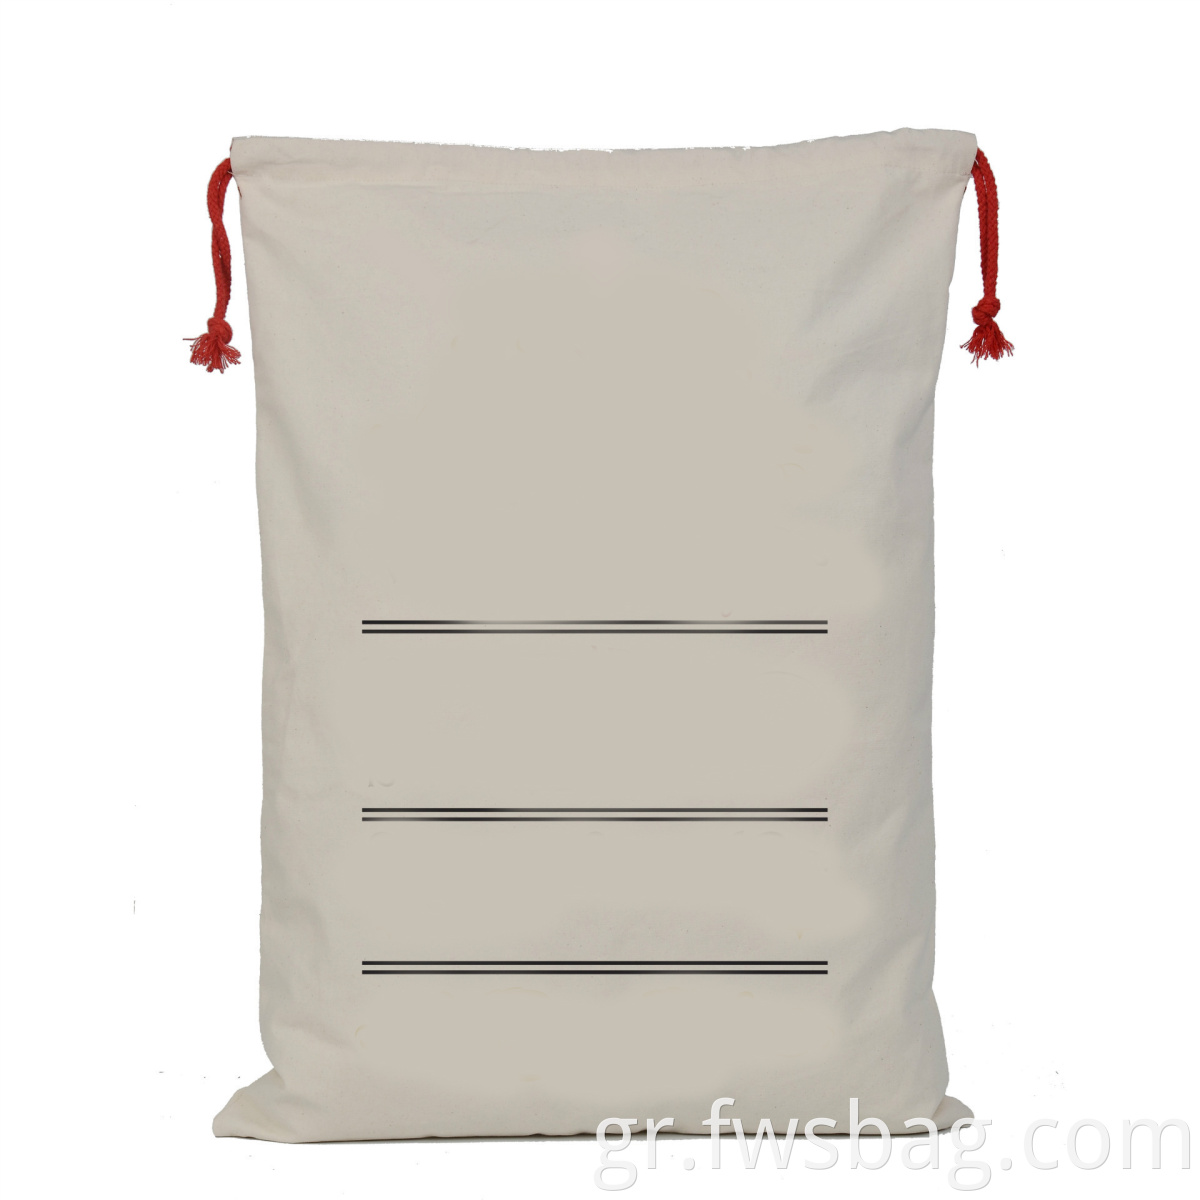 Χριστουγεννιάτικο Drawstring Cotton Gift Bag Proptointional Canvas Blank Santa Sack